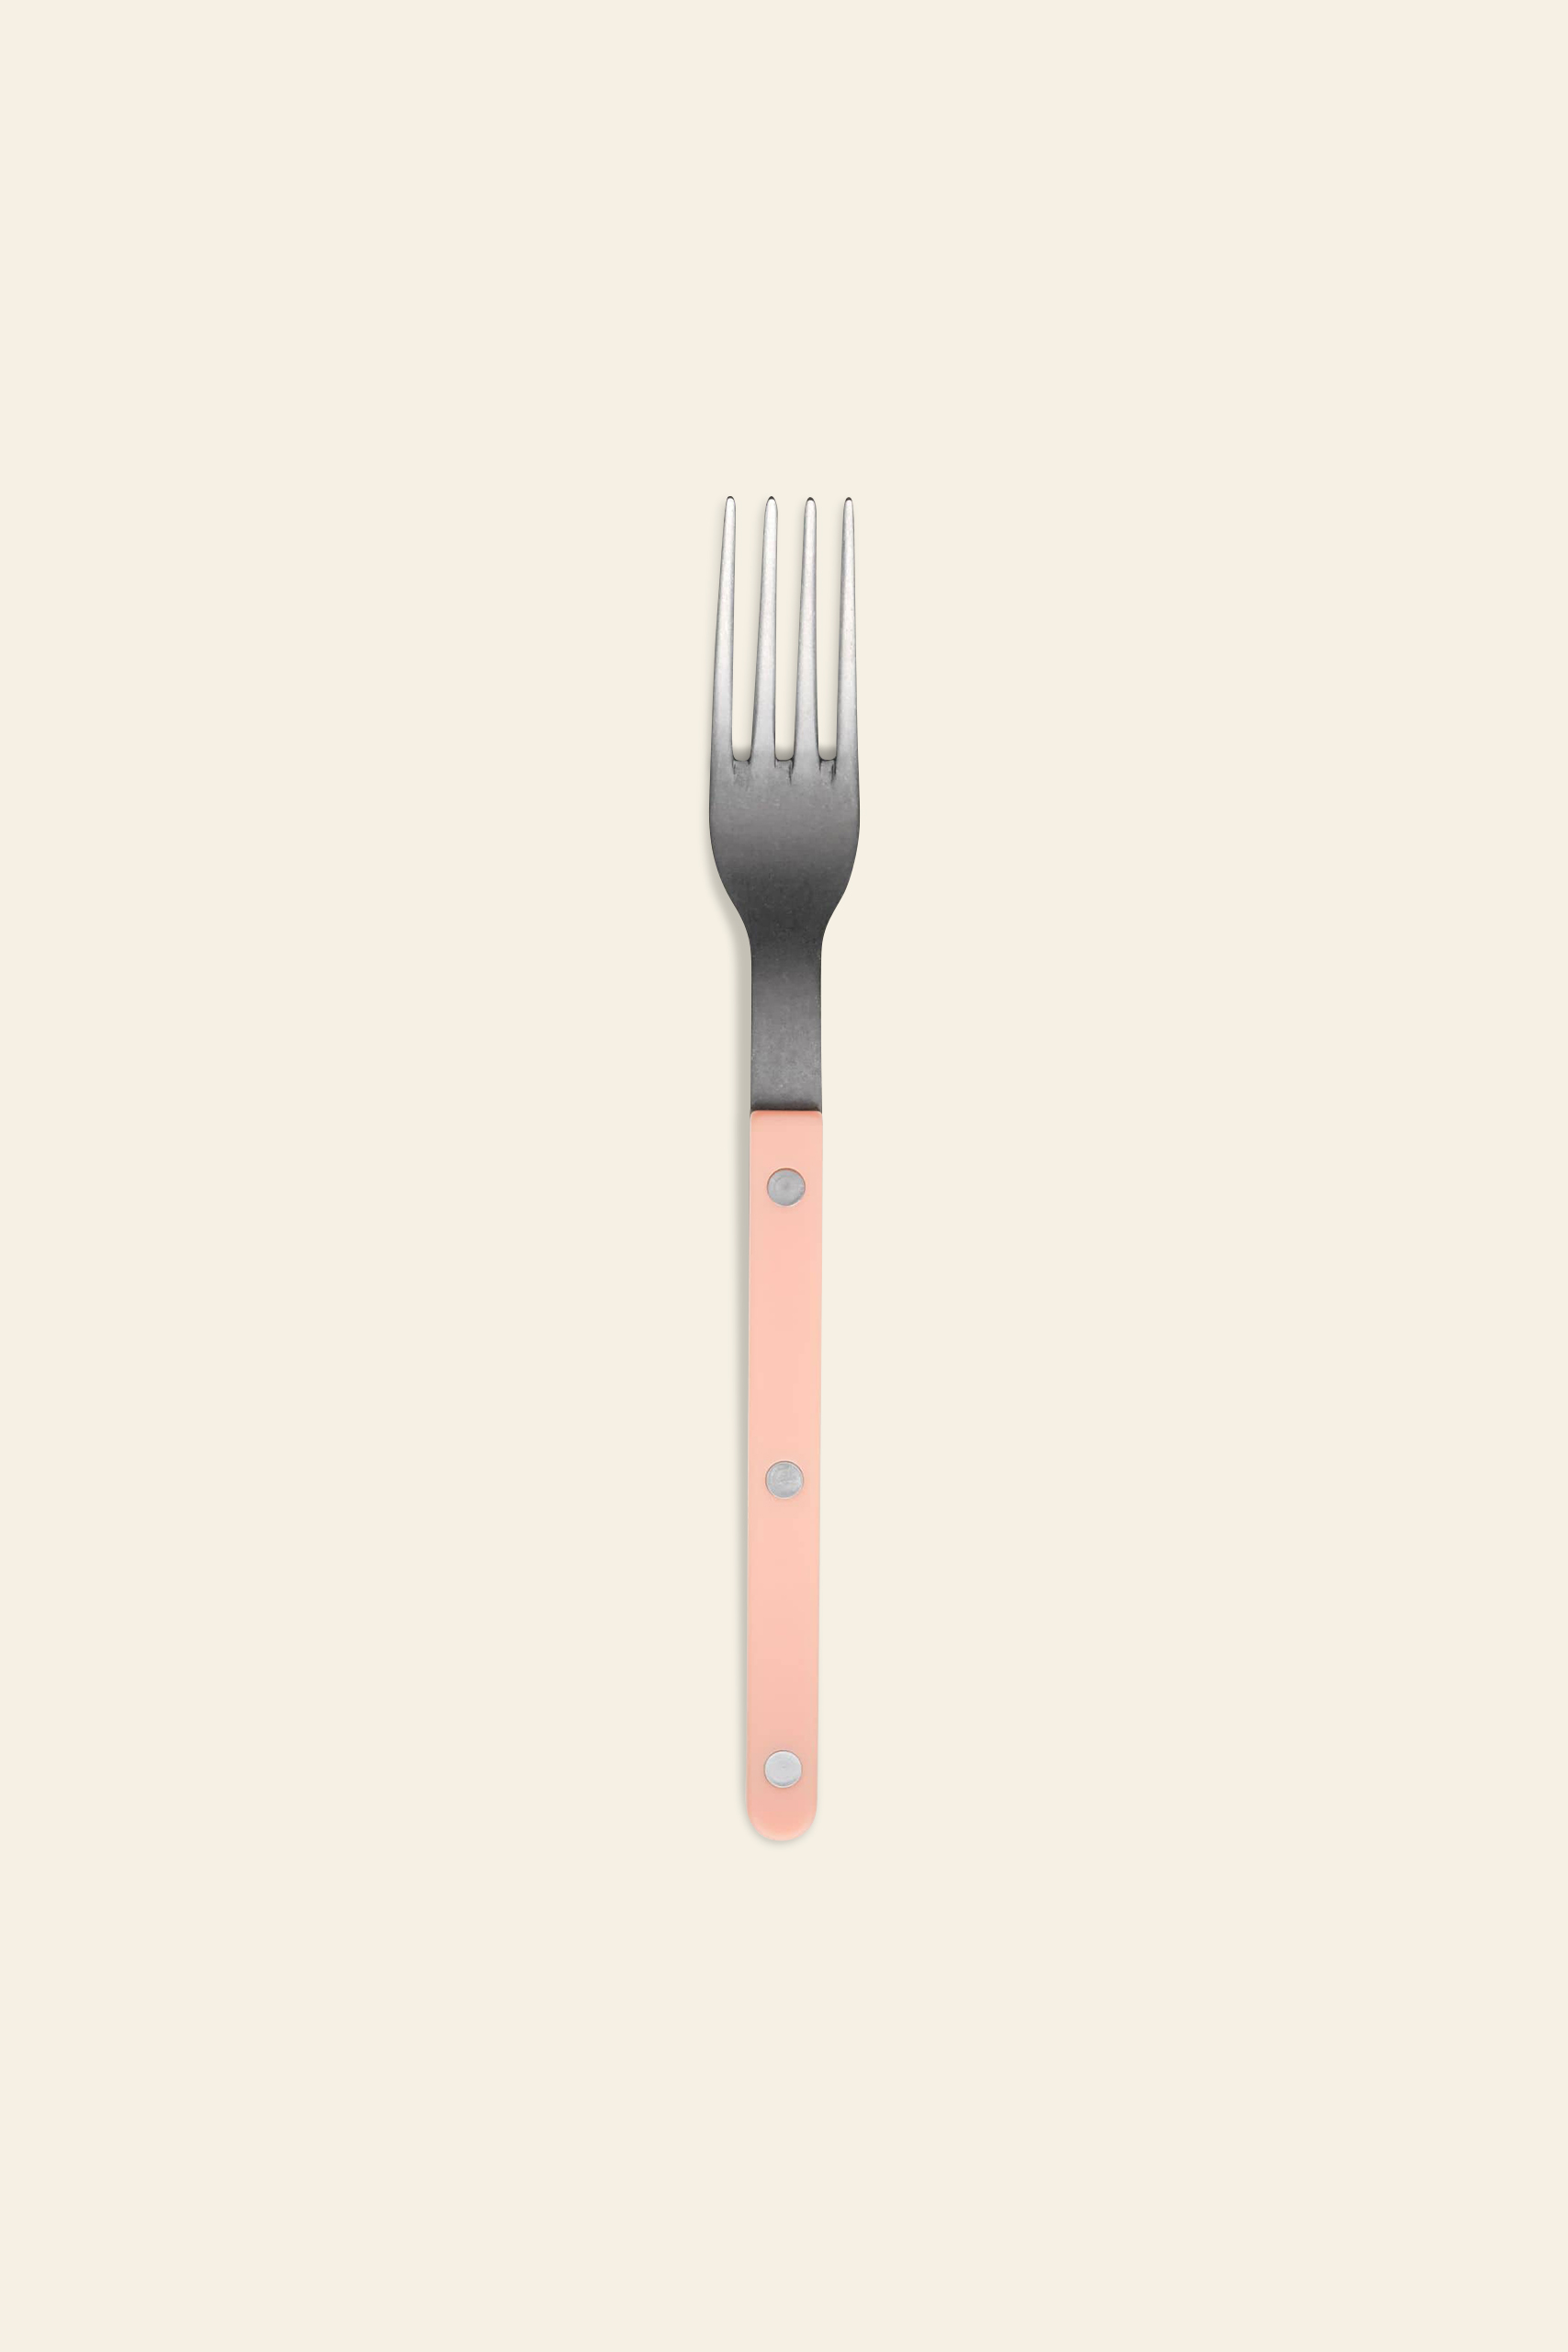 Sabre Bistrot Vintage Dinner Fork Nude Pink 1